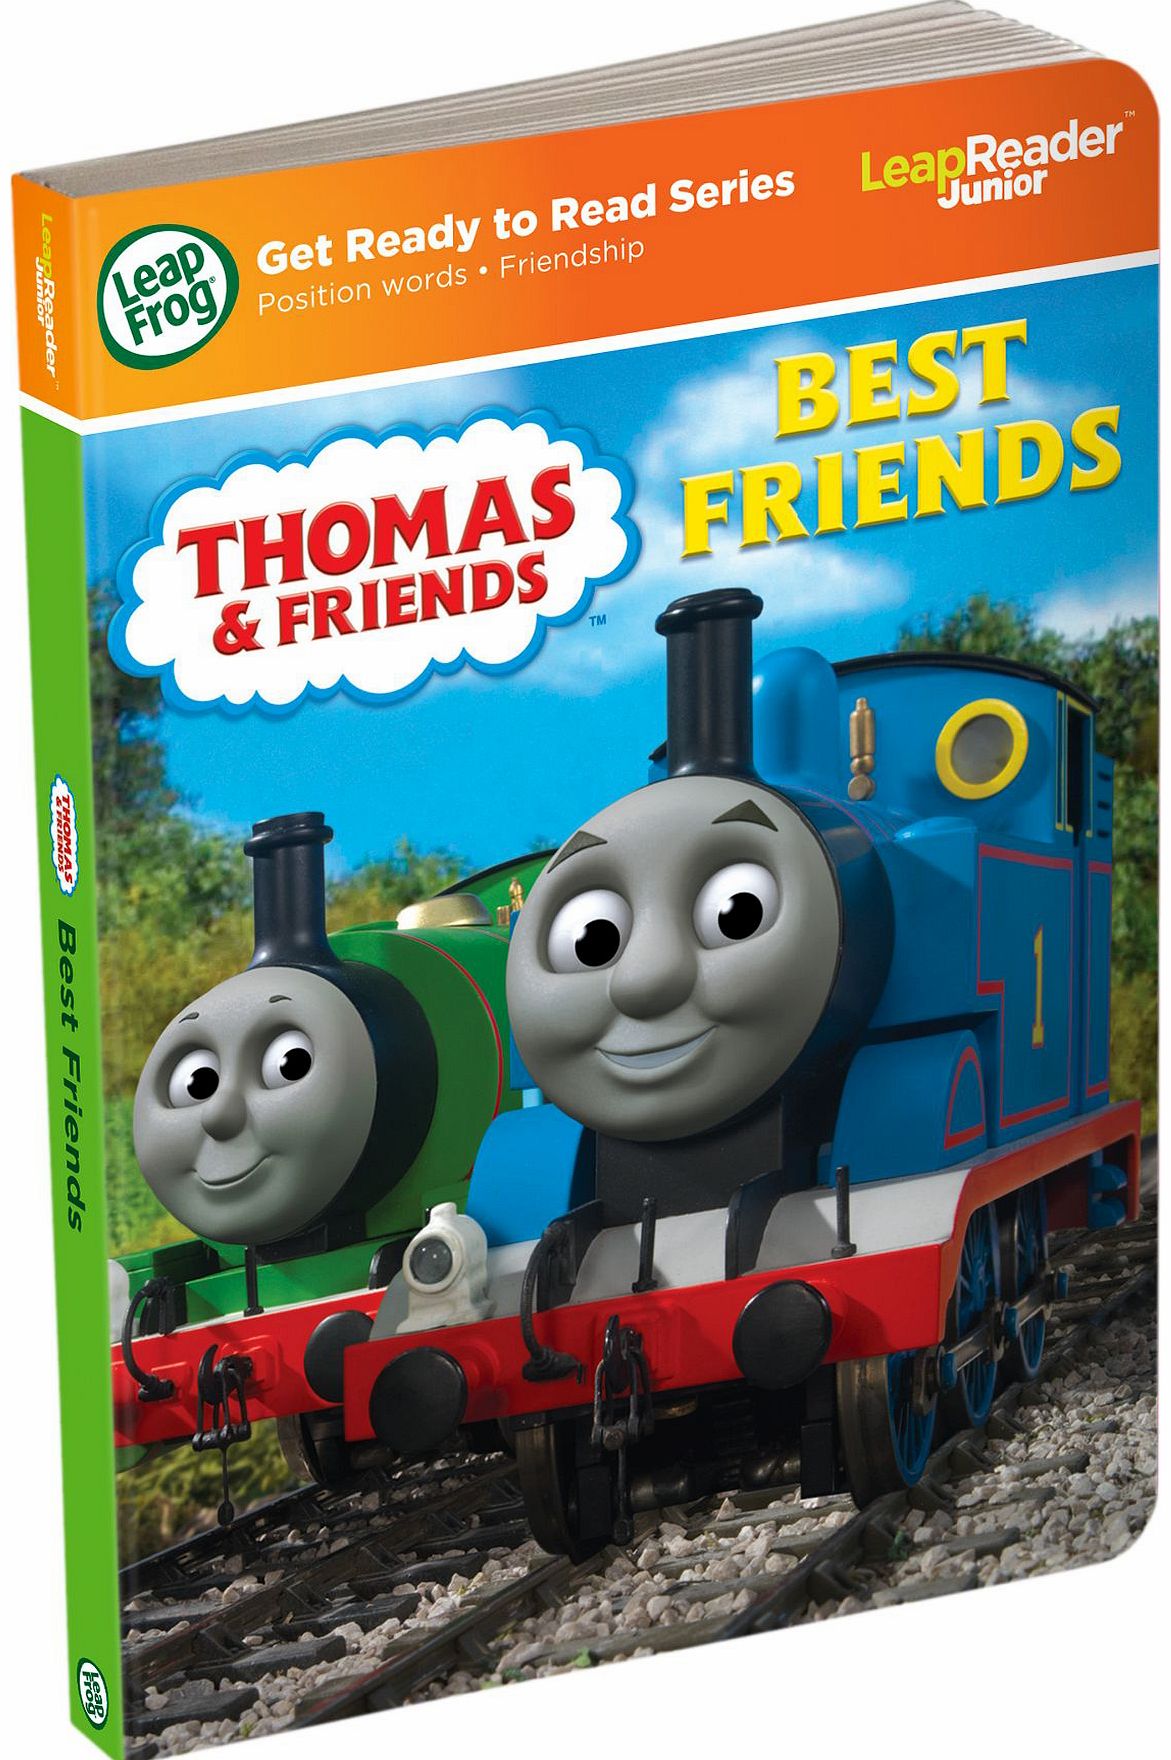 Tag Junior Book Thomas the Tank Engine